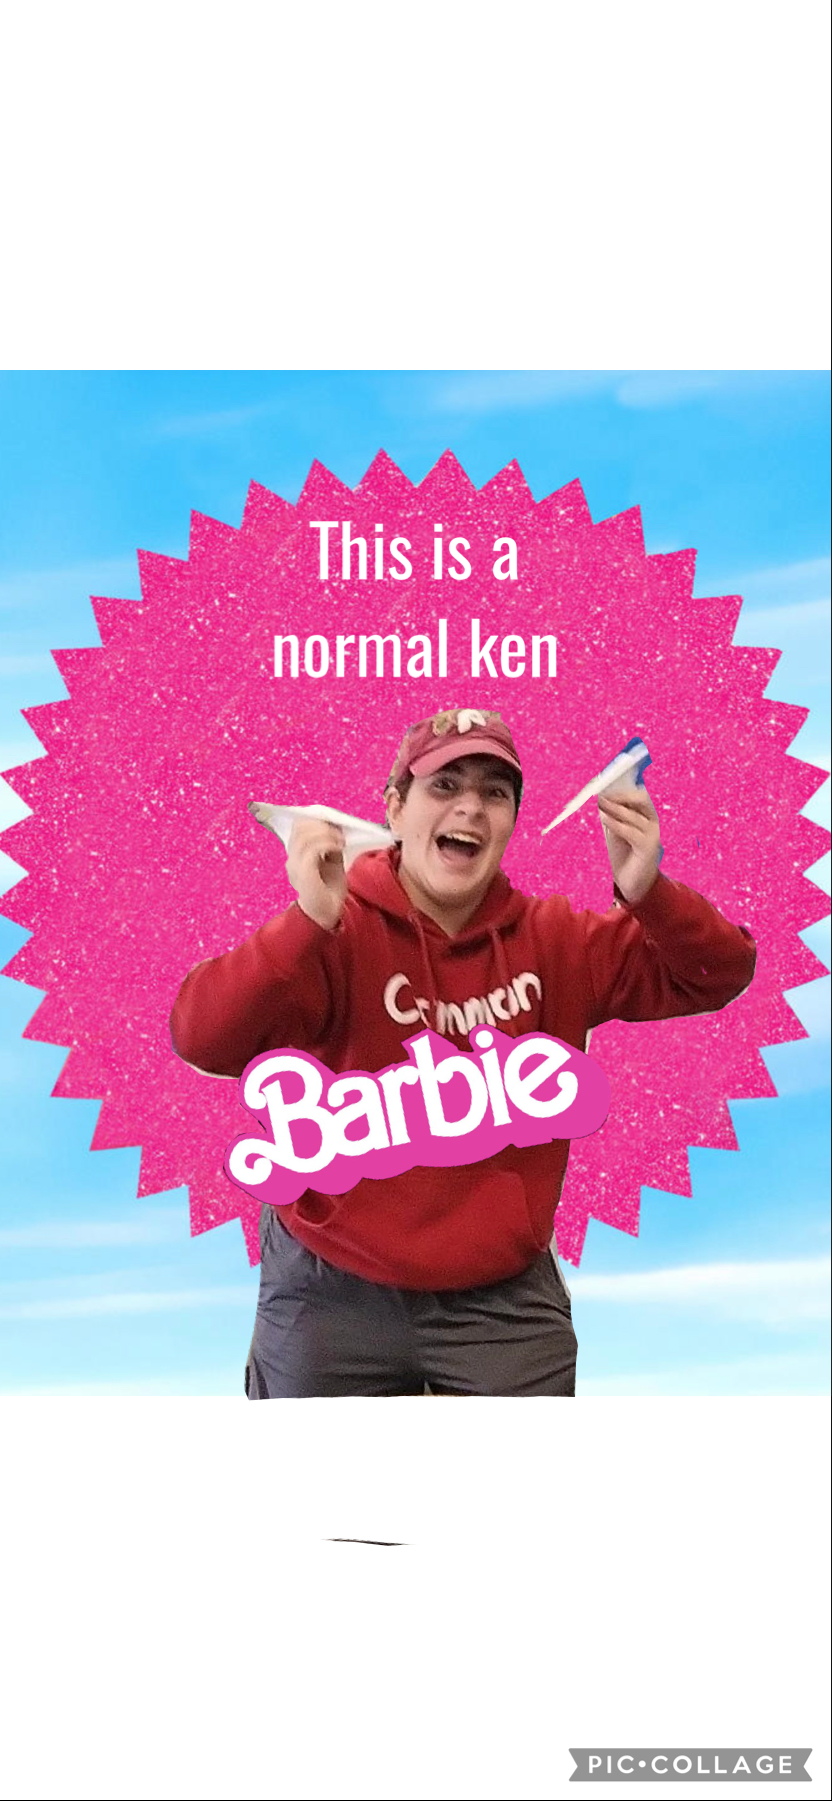 Just a normal ken